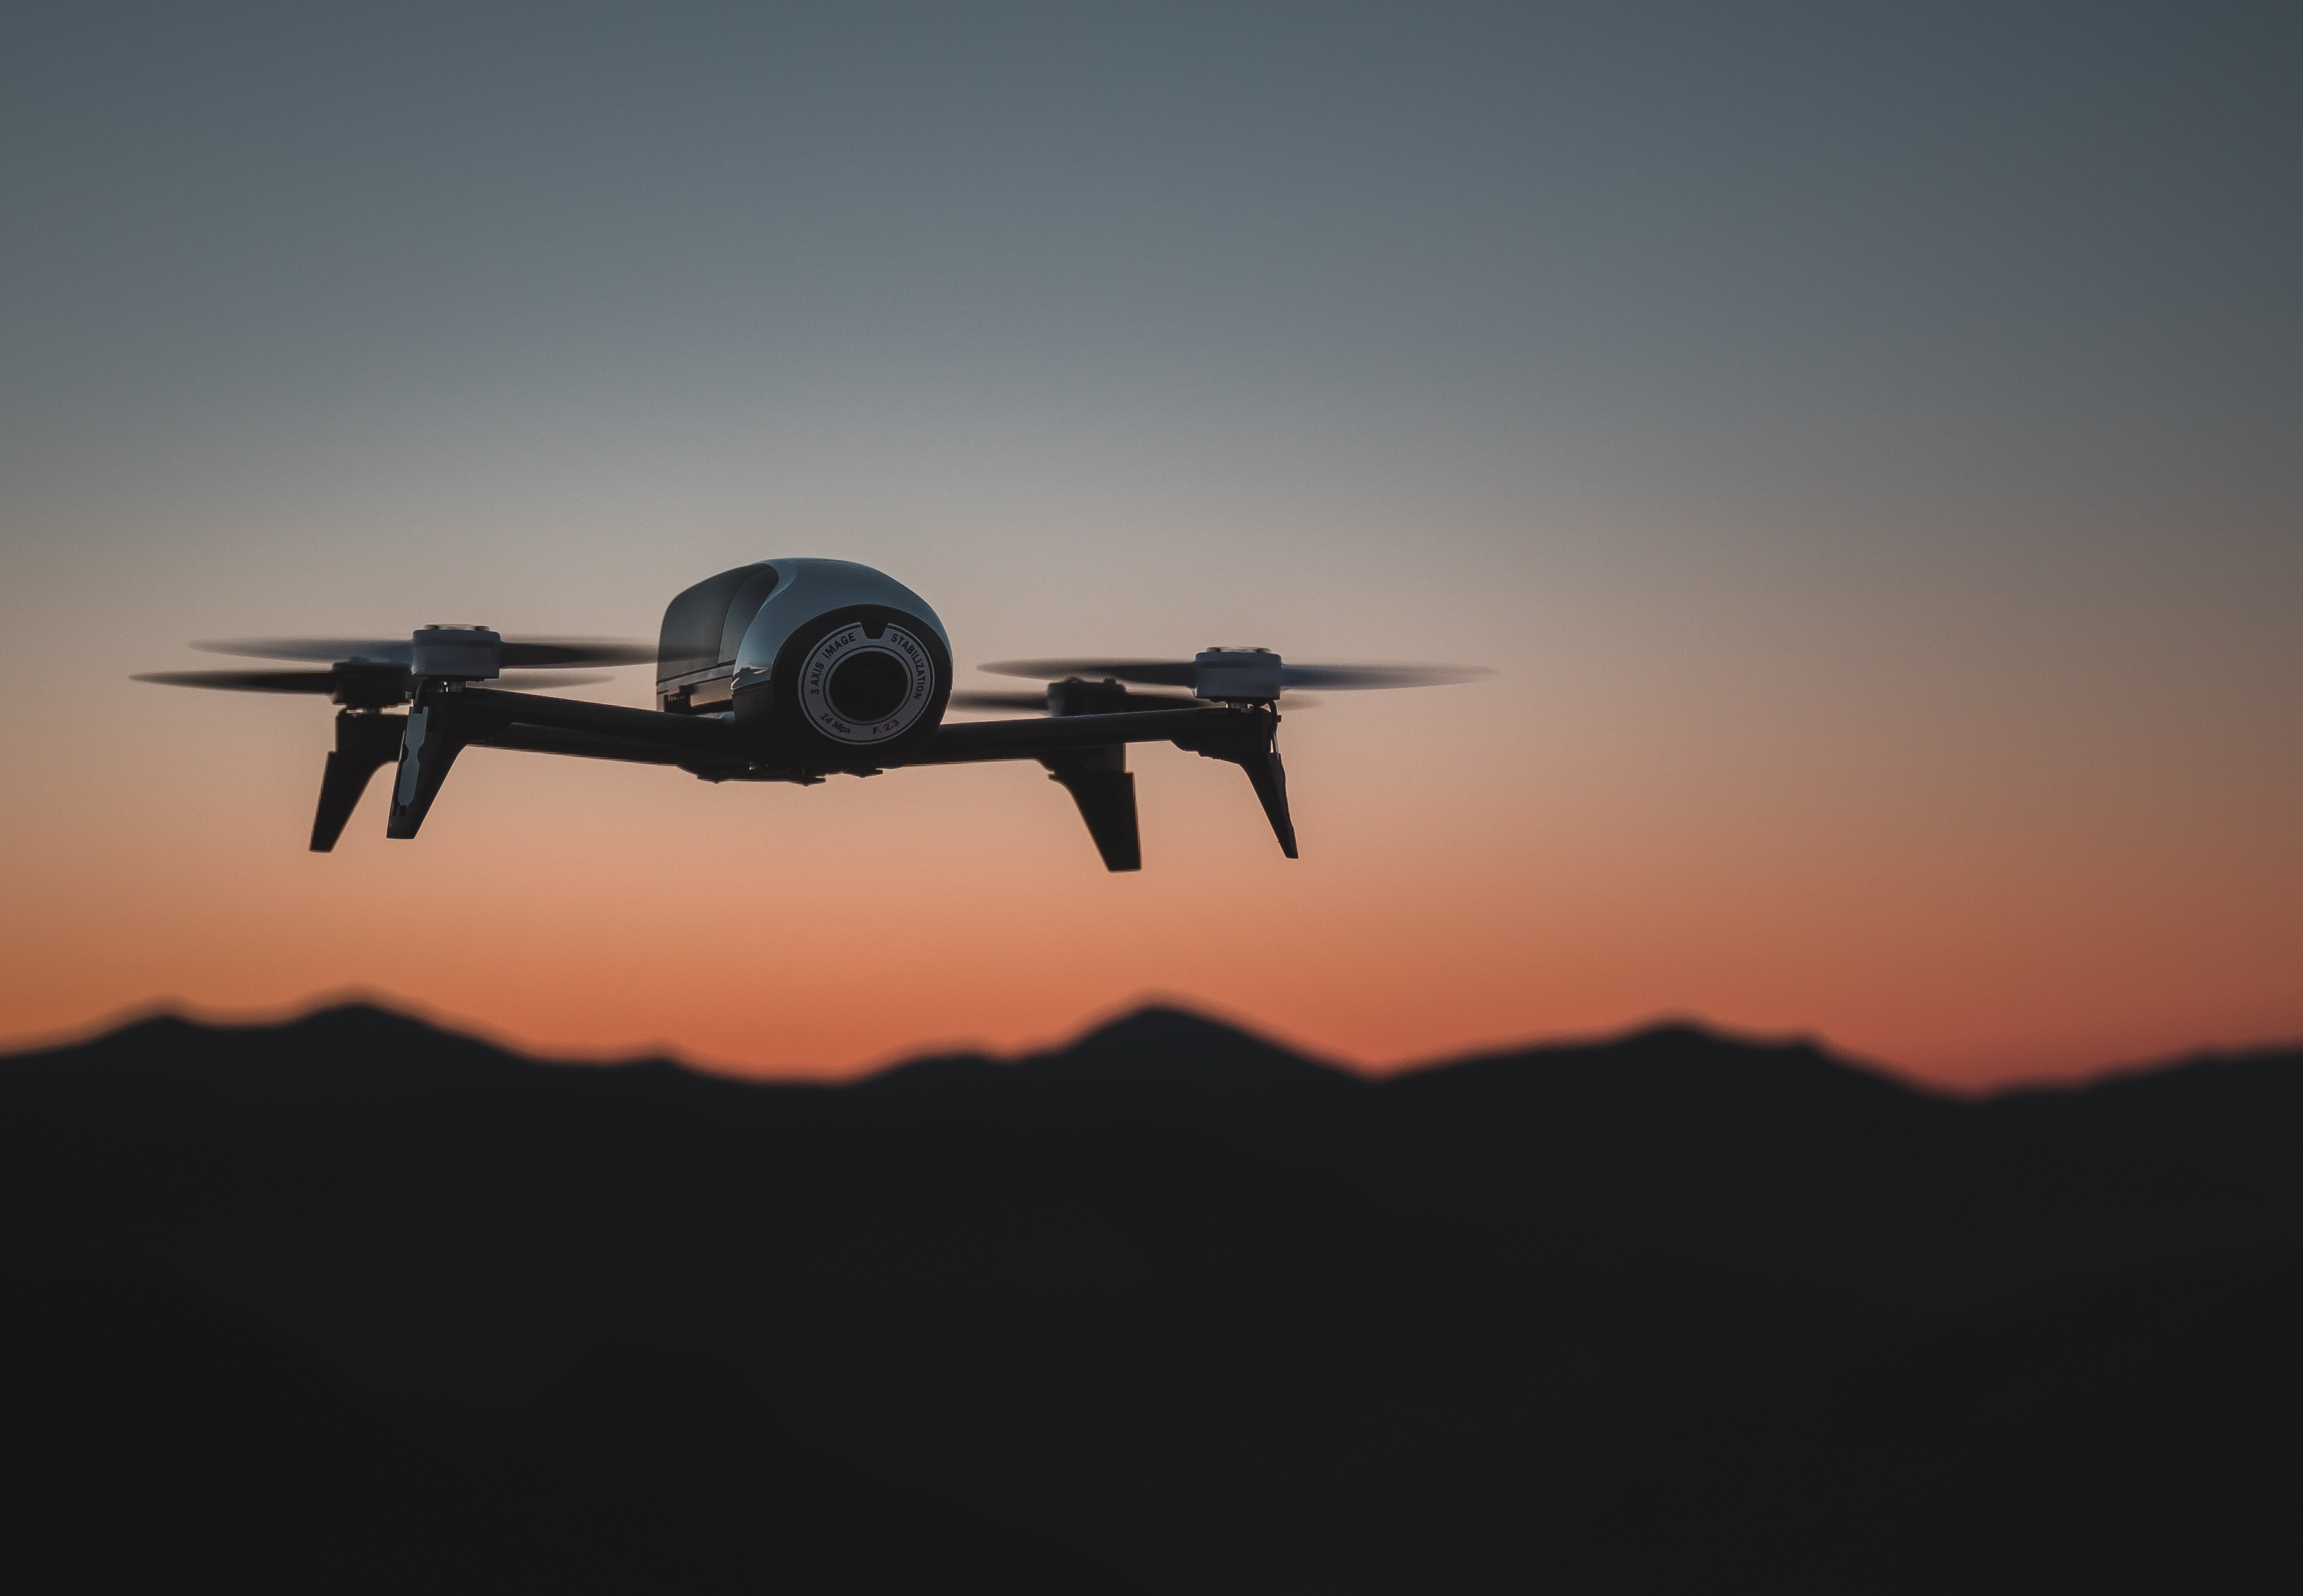 Les États-Unis veulent encadrer l’usage militaire de l’intelligence artificielle et des armes autonomes, comme les drones. © alex.clzt, Adobe Stock